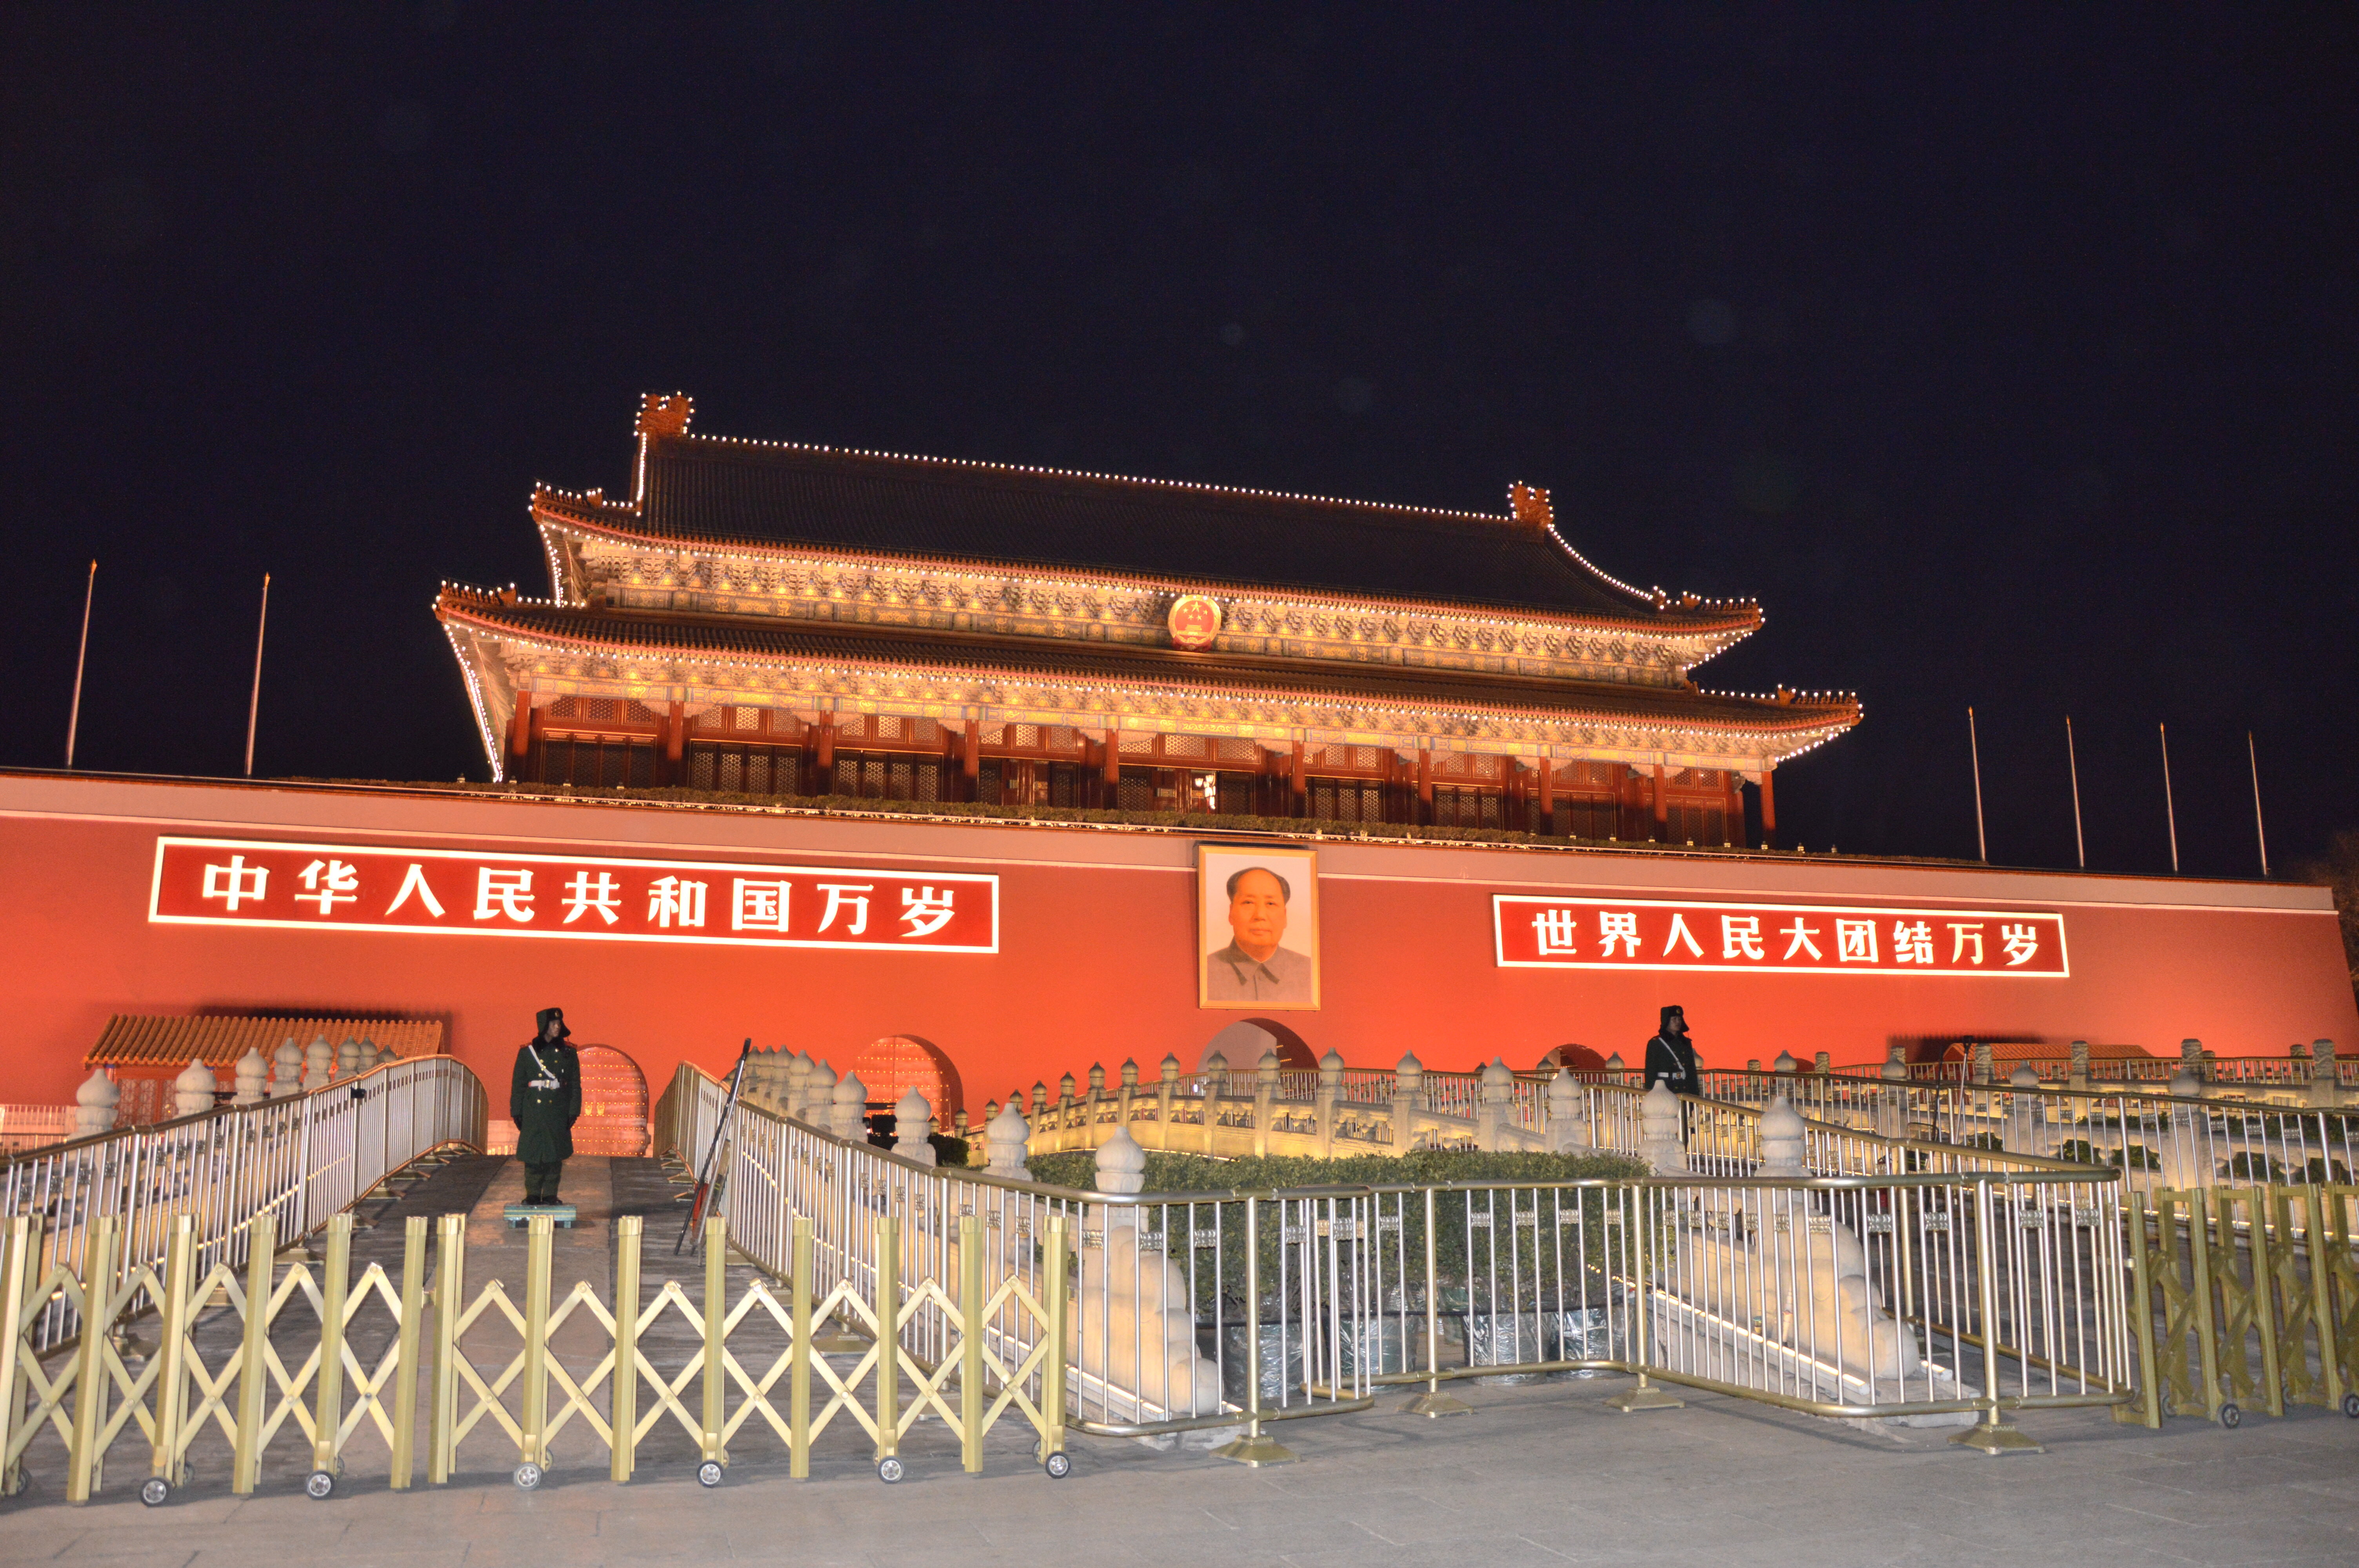 【携程攻略】北京天安门城楼景点,天安门城楼位于天安门广场北端，是中国古代最壮丽的城楼,也是新中国…